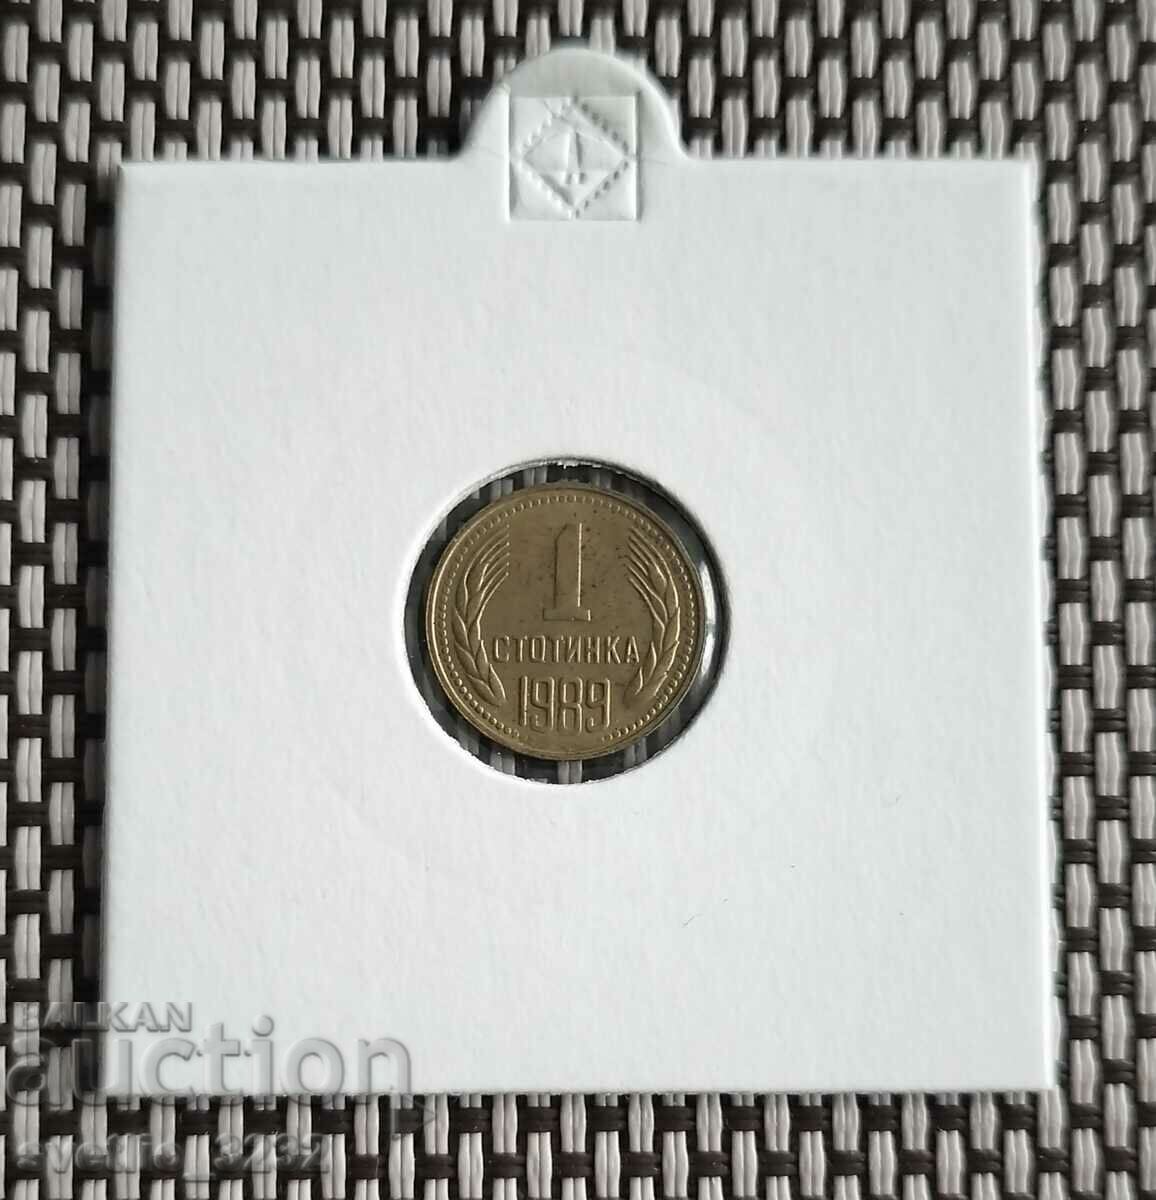 1 стотинка 1989